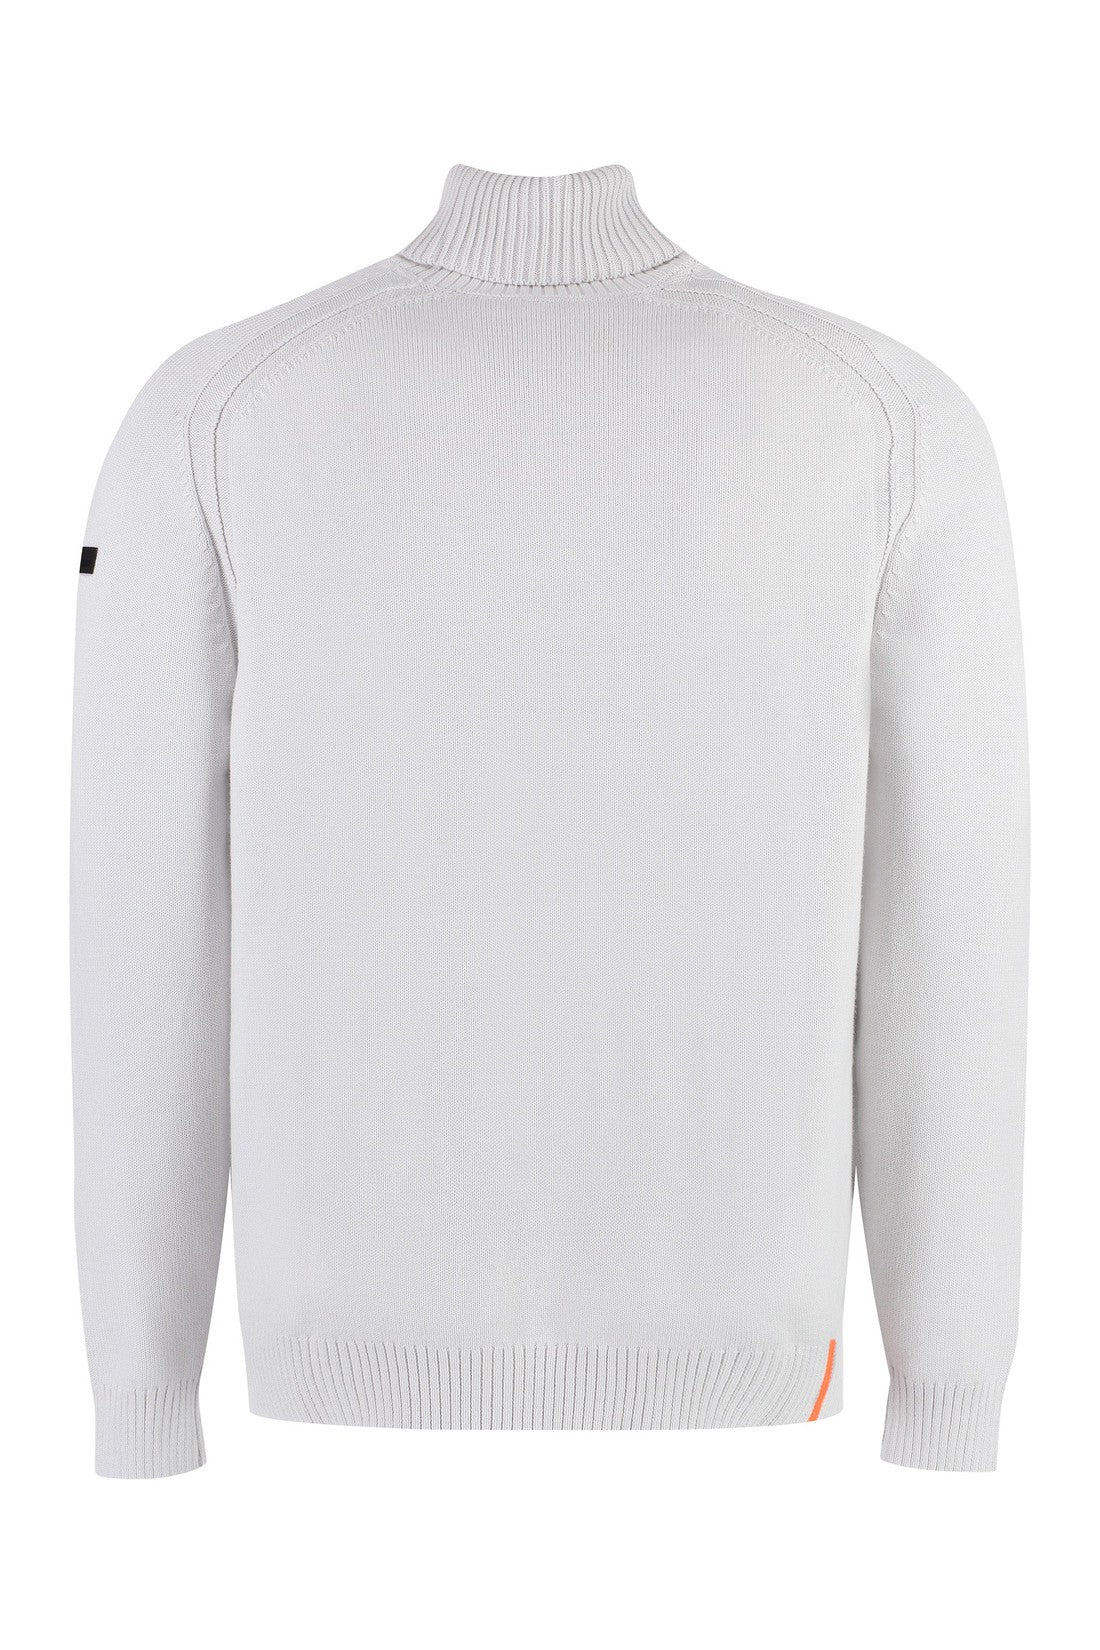 RRD-OUTLET-SALE-Cotton turtleneck sweater-ARCHIVIST